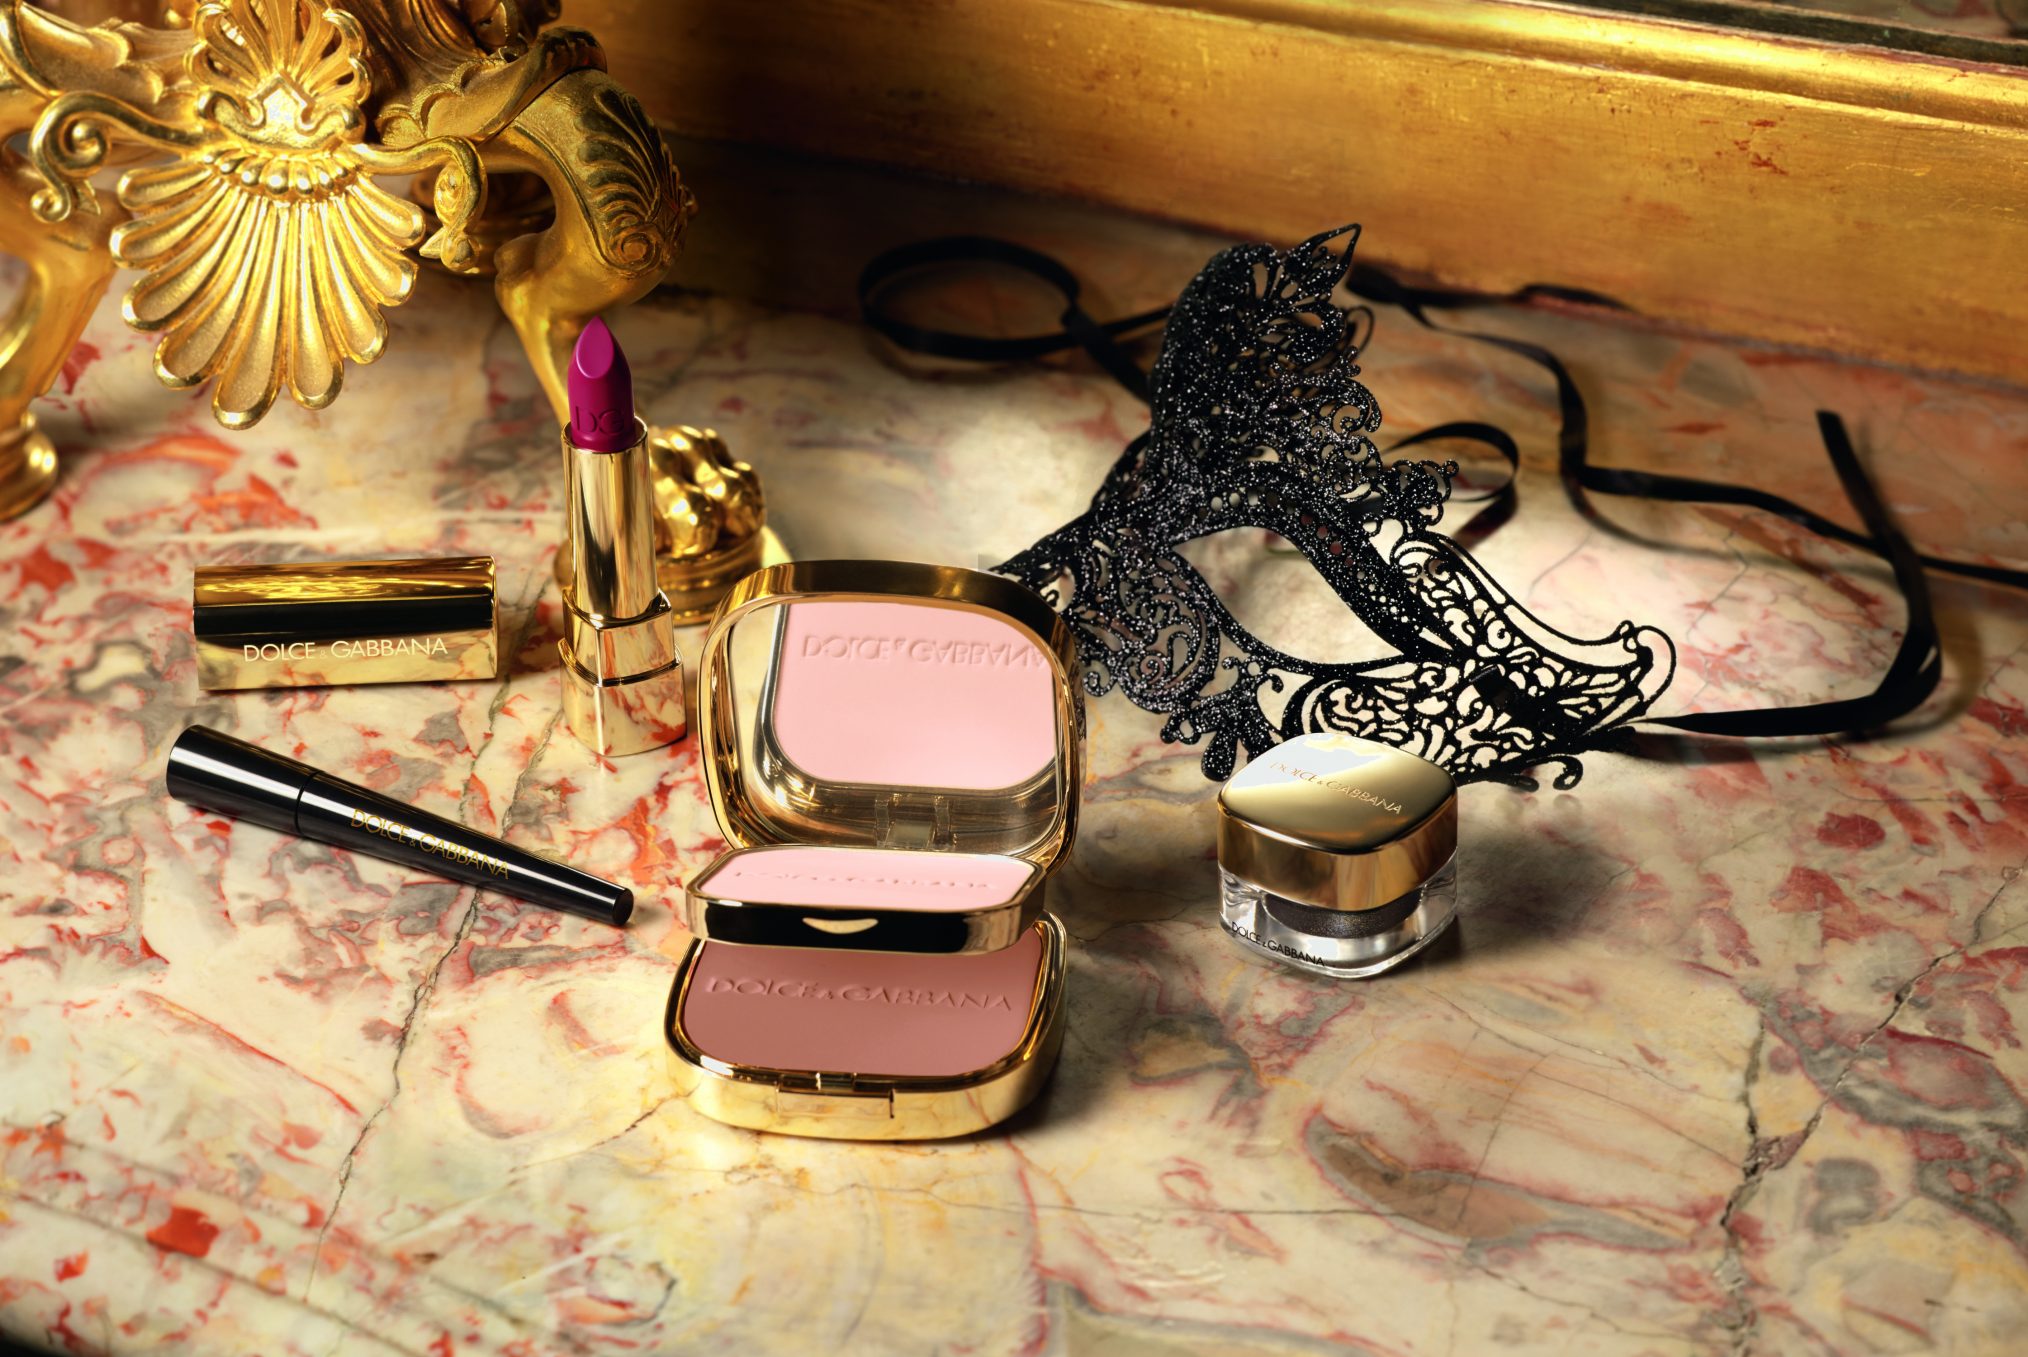 Baroque Night Out: Edición limitada de maquillaje de Dolce Gabbana, ideal para estas fiestas. http://www.dolcegabbana.com/beauty/makeup/face-charts/baroque-night-out/